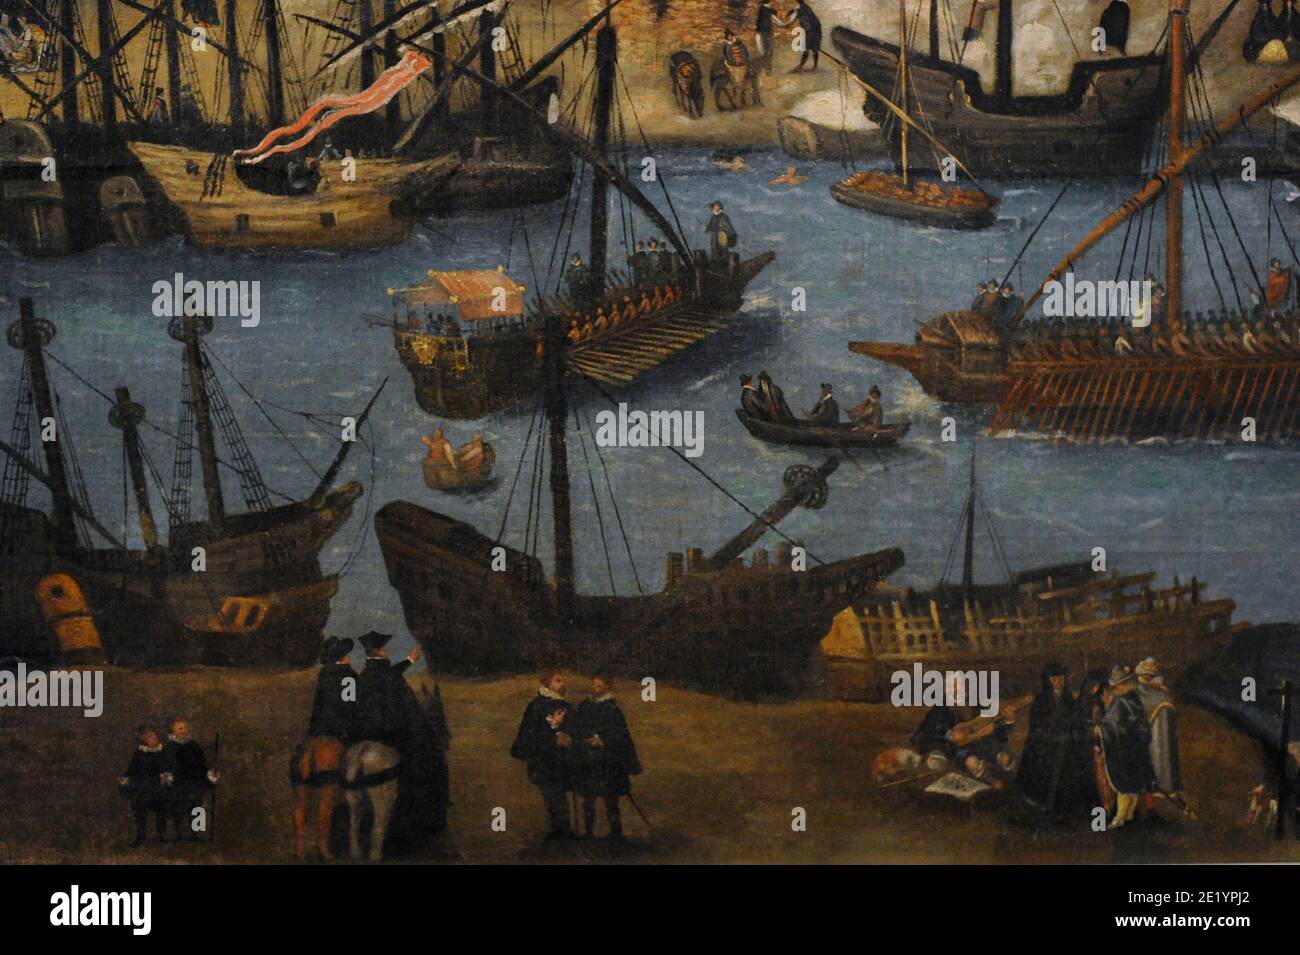 Blick auf Sevilla, c. 1590. Gemälde von Alonso Sánchez Coello (1531-1588). Öl auf Leinwand. Details. Werft auf dem Fluss Guadalquivir. Prado Museum, Kaution im Museum of the Americas. Madrid, Spanien. Stockfoto